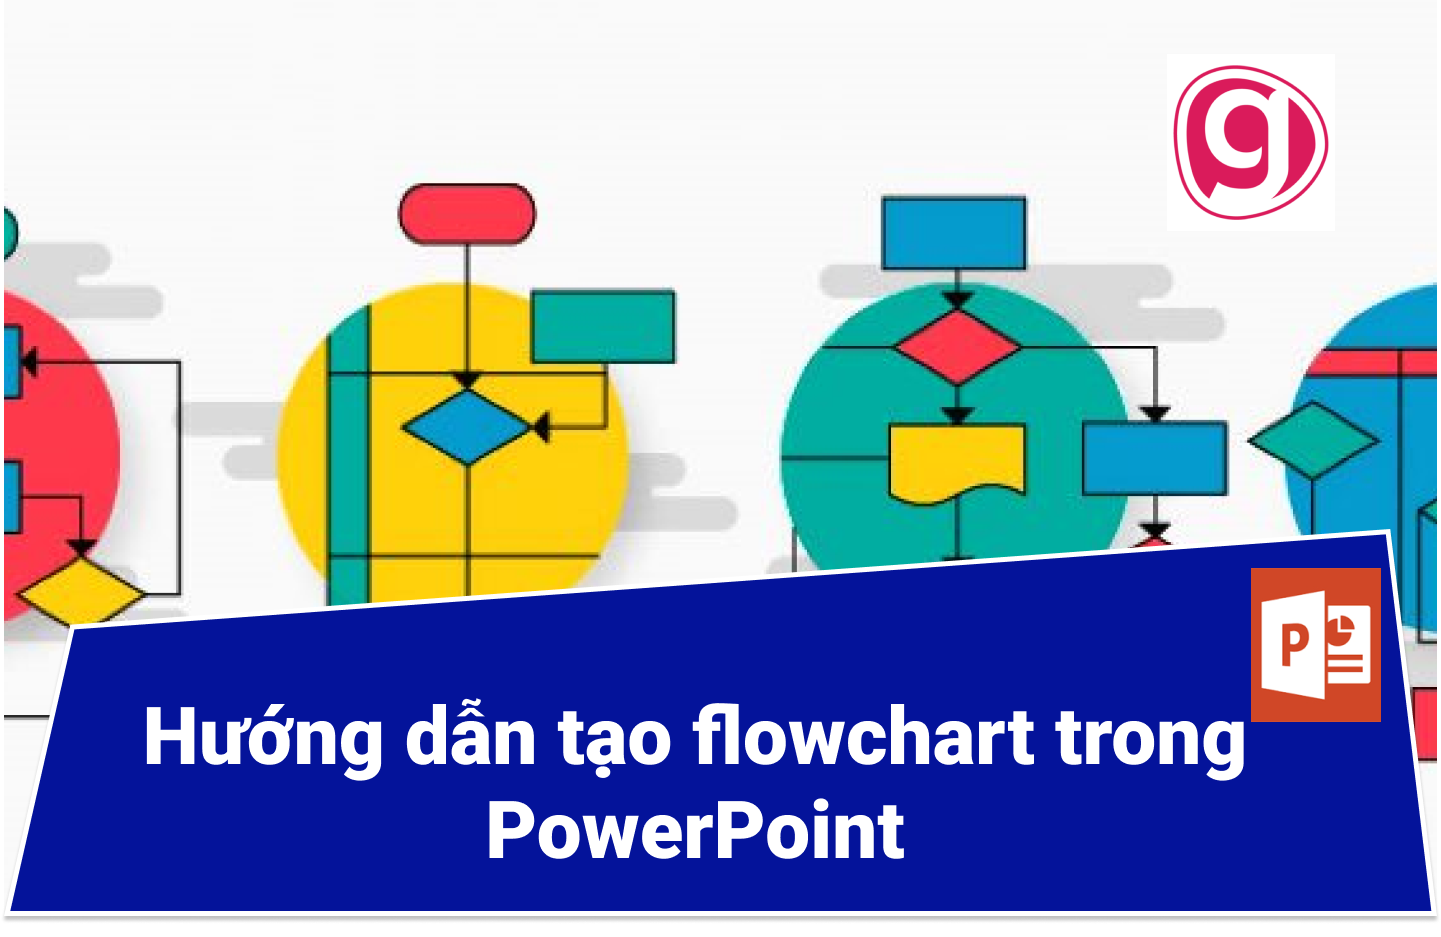 Flowchart trong PowerPoint là cách hiệu quả để trình bày dữ liệu và thông tin một cách trực quan. Hãy xem ngay hình ảnh để tìm hiểu về lợi ích của việc sử dụng Flowchart, cách phân loại thông tin và cách lập kế hoạch một cách nhanh chóng và dễ dàng.